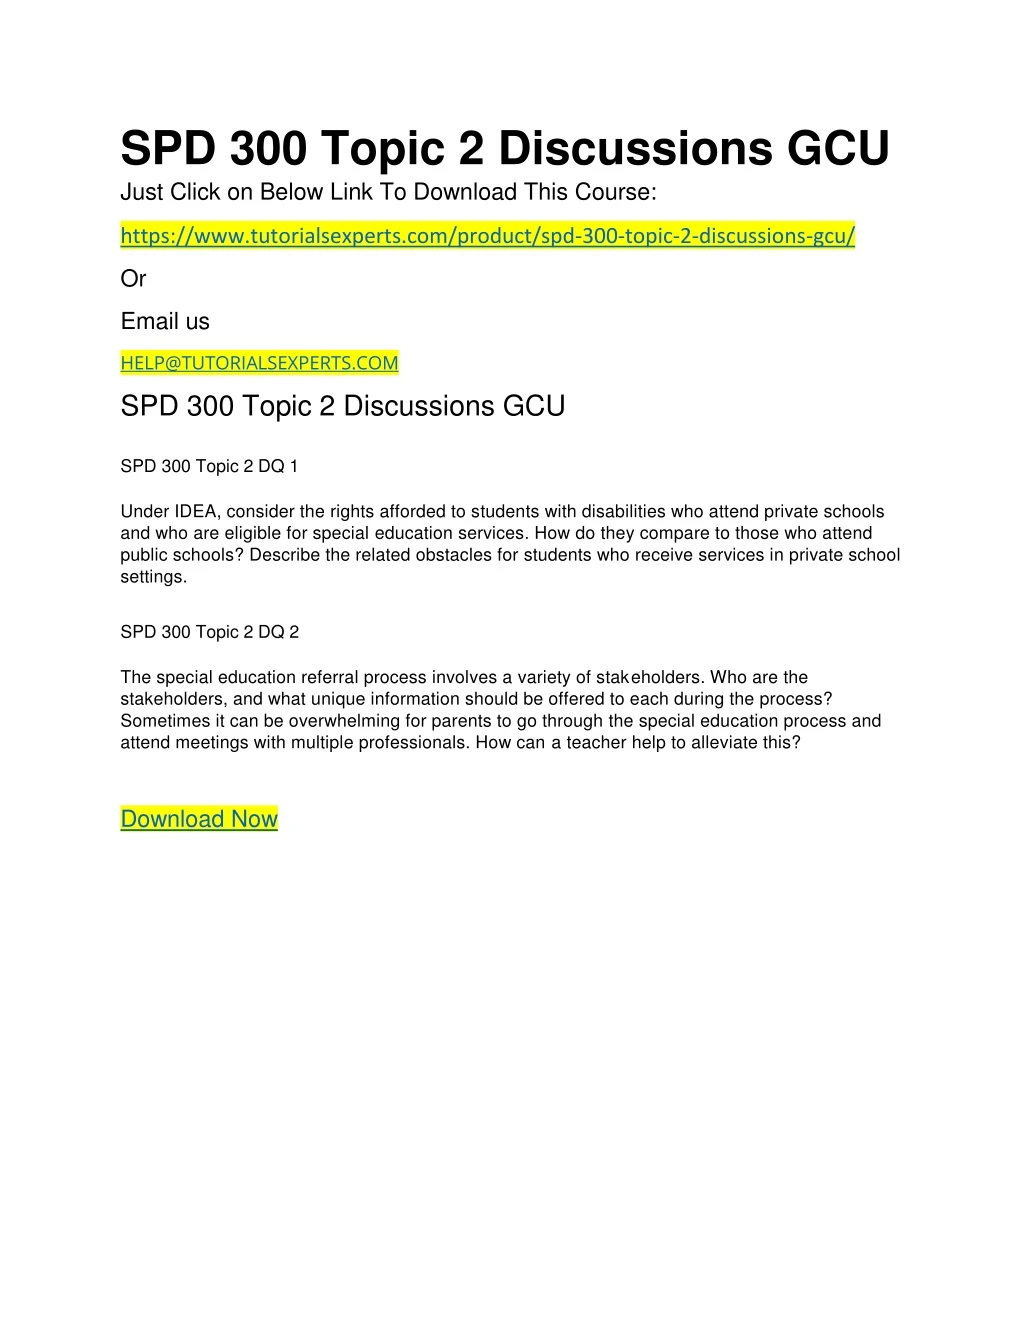 spd 300 topic 2 discussions gcu just click